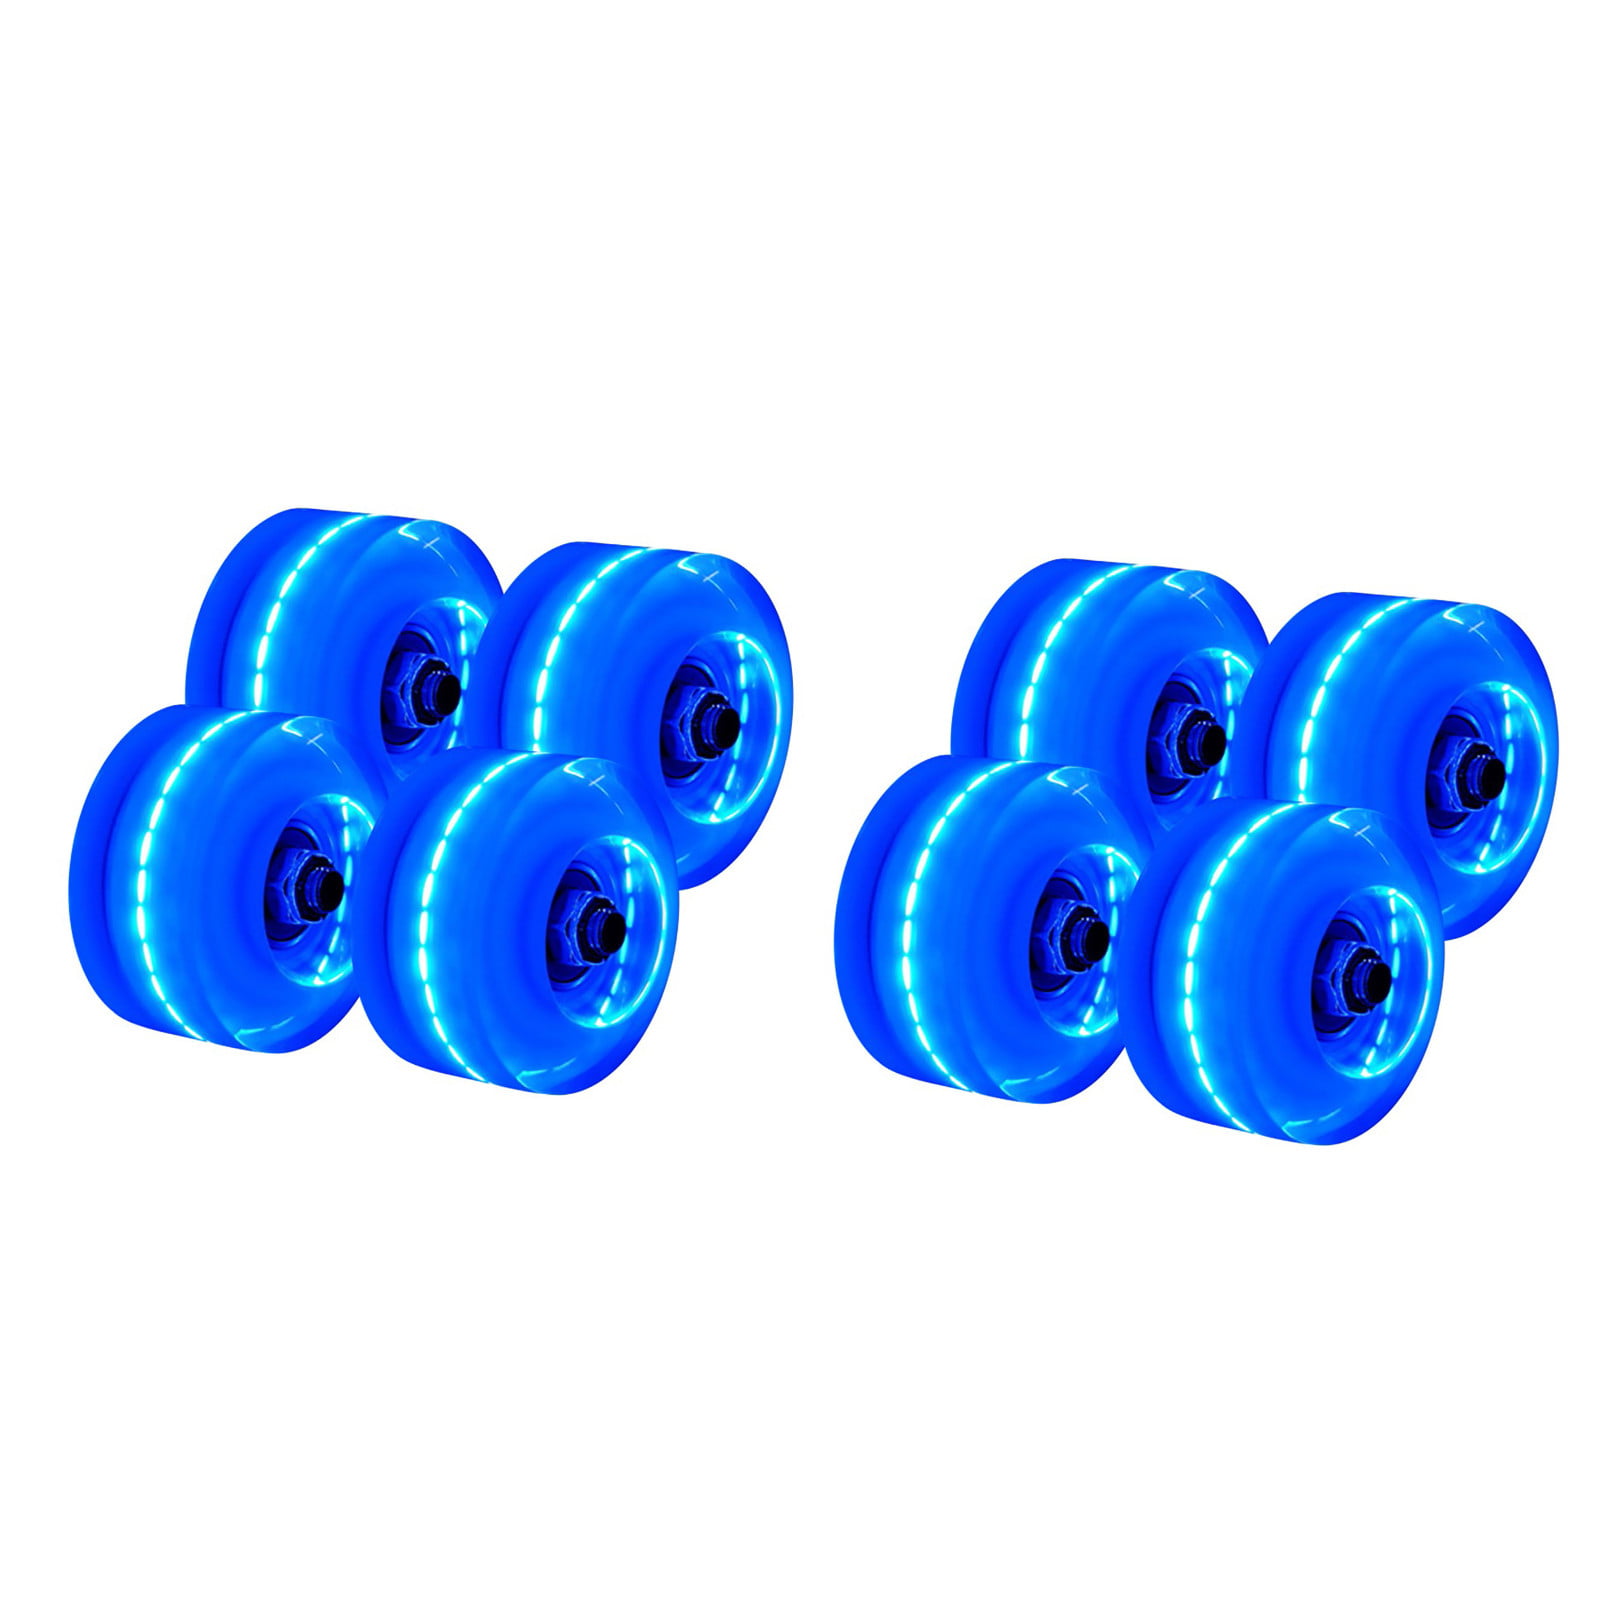 4PCS Luminous Light Up Quad Roller Skate Wheels W/ BankRoll Bearings Installed 